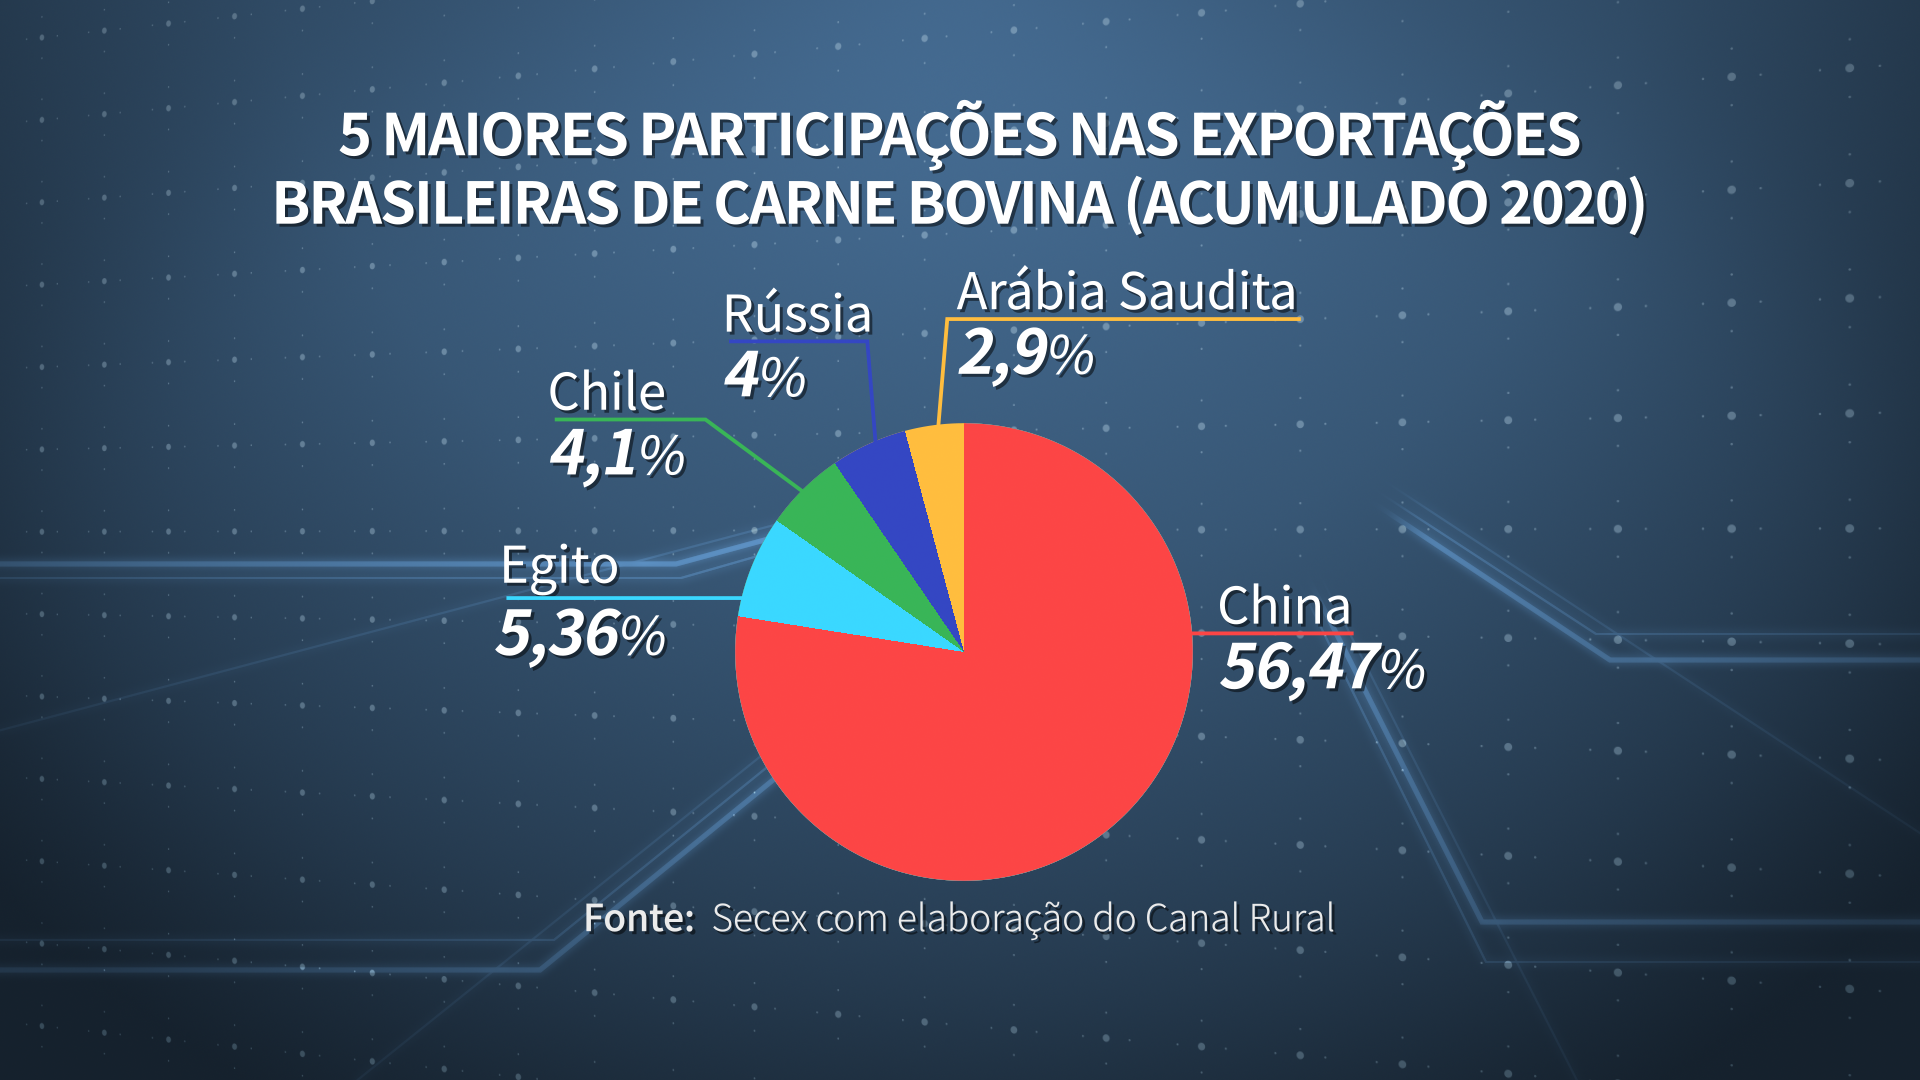 China se consolida como maior compradora de carne bovina brasileira